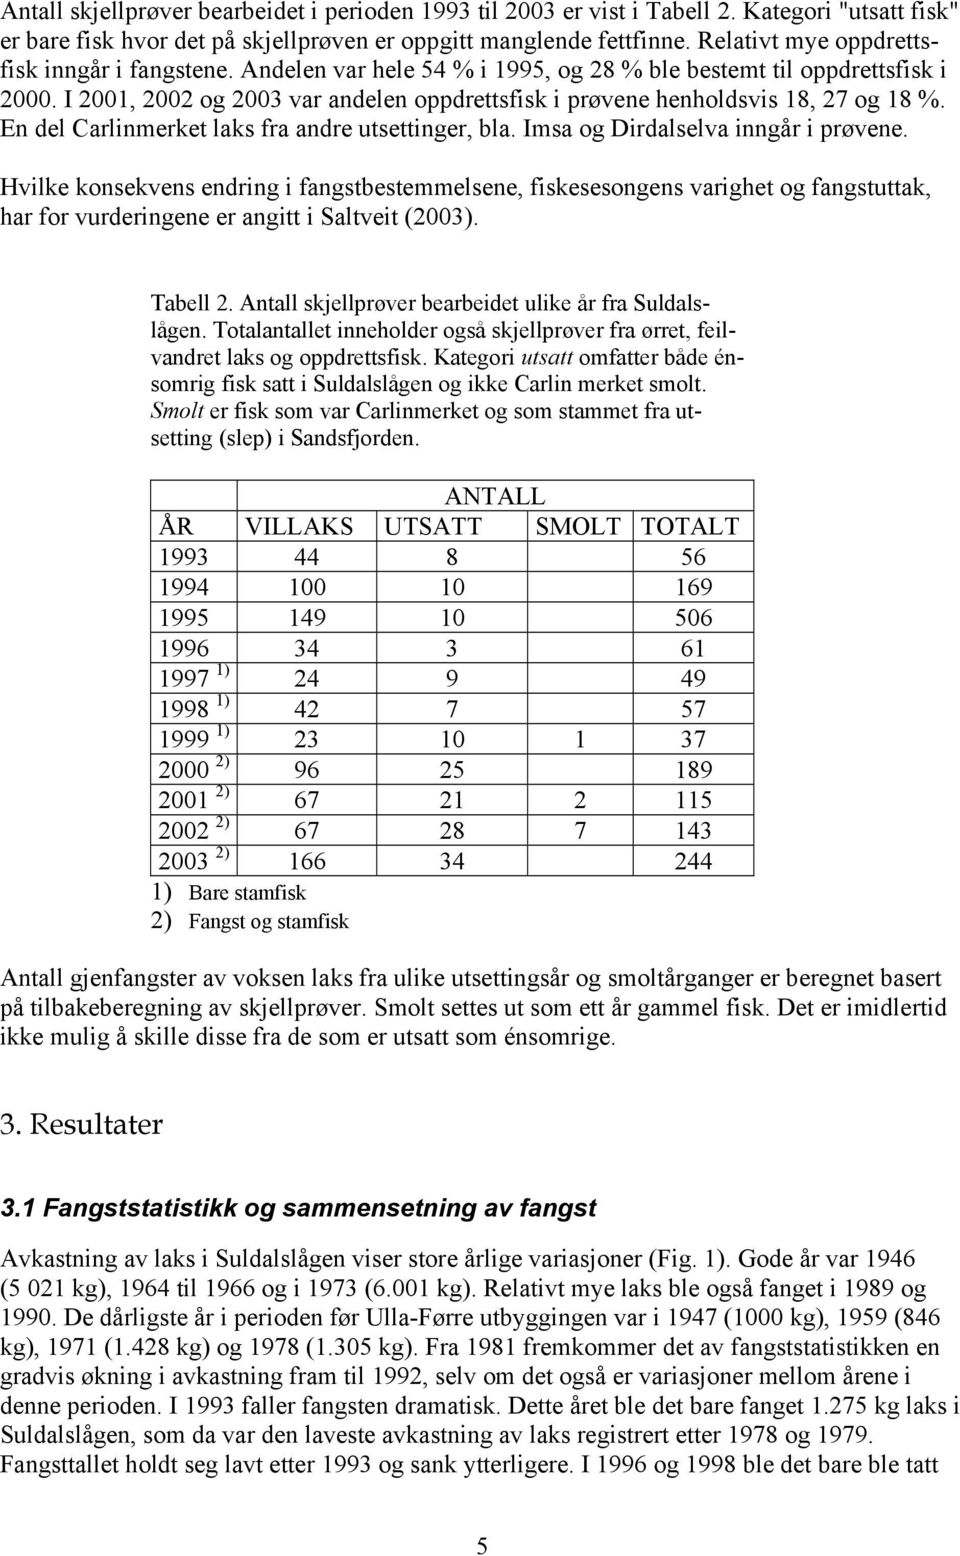 I 2001, 2002 og 2003 var andelen oppdrettsfisk i prøvene henholdsvis 18, 27 og 18 %. En del Carlinmerket laks fra andre utsettinger, bla. Imsa og Dirdalselva inngår i prøvene.